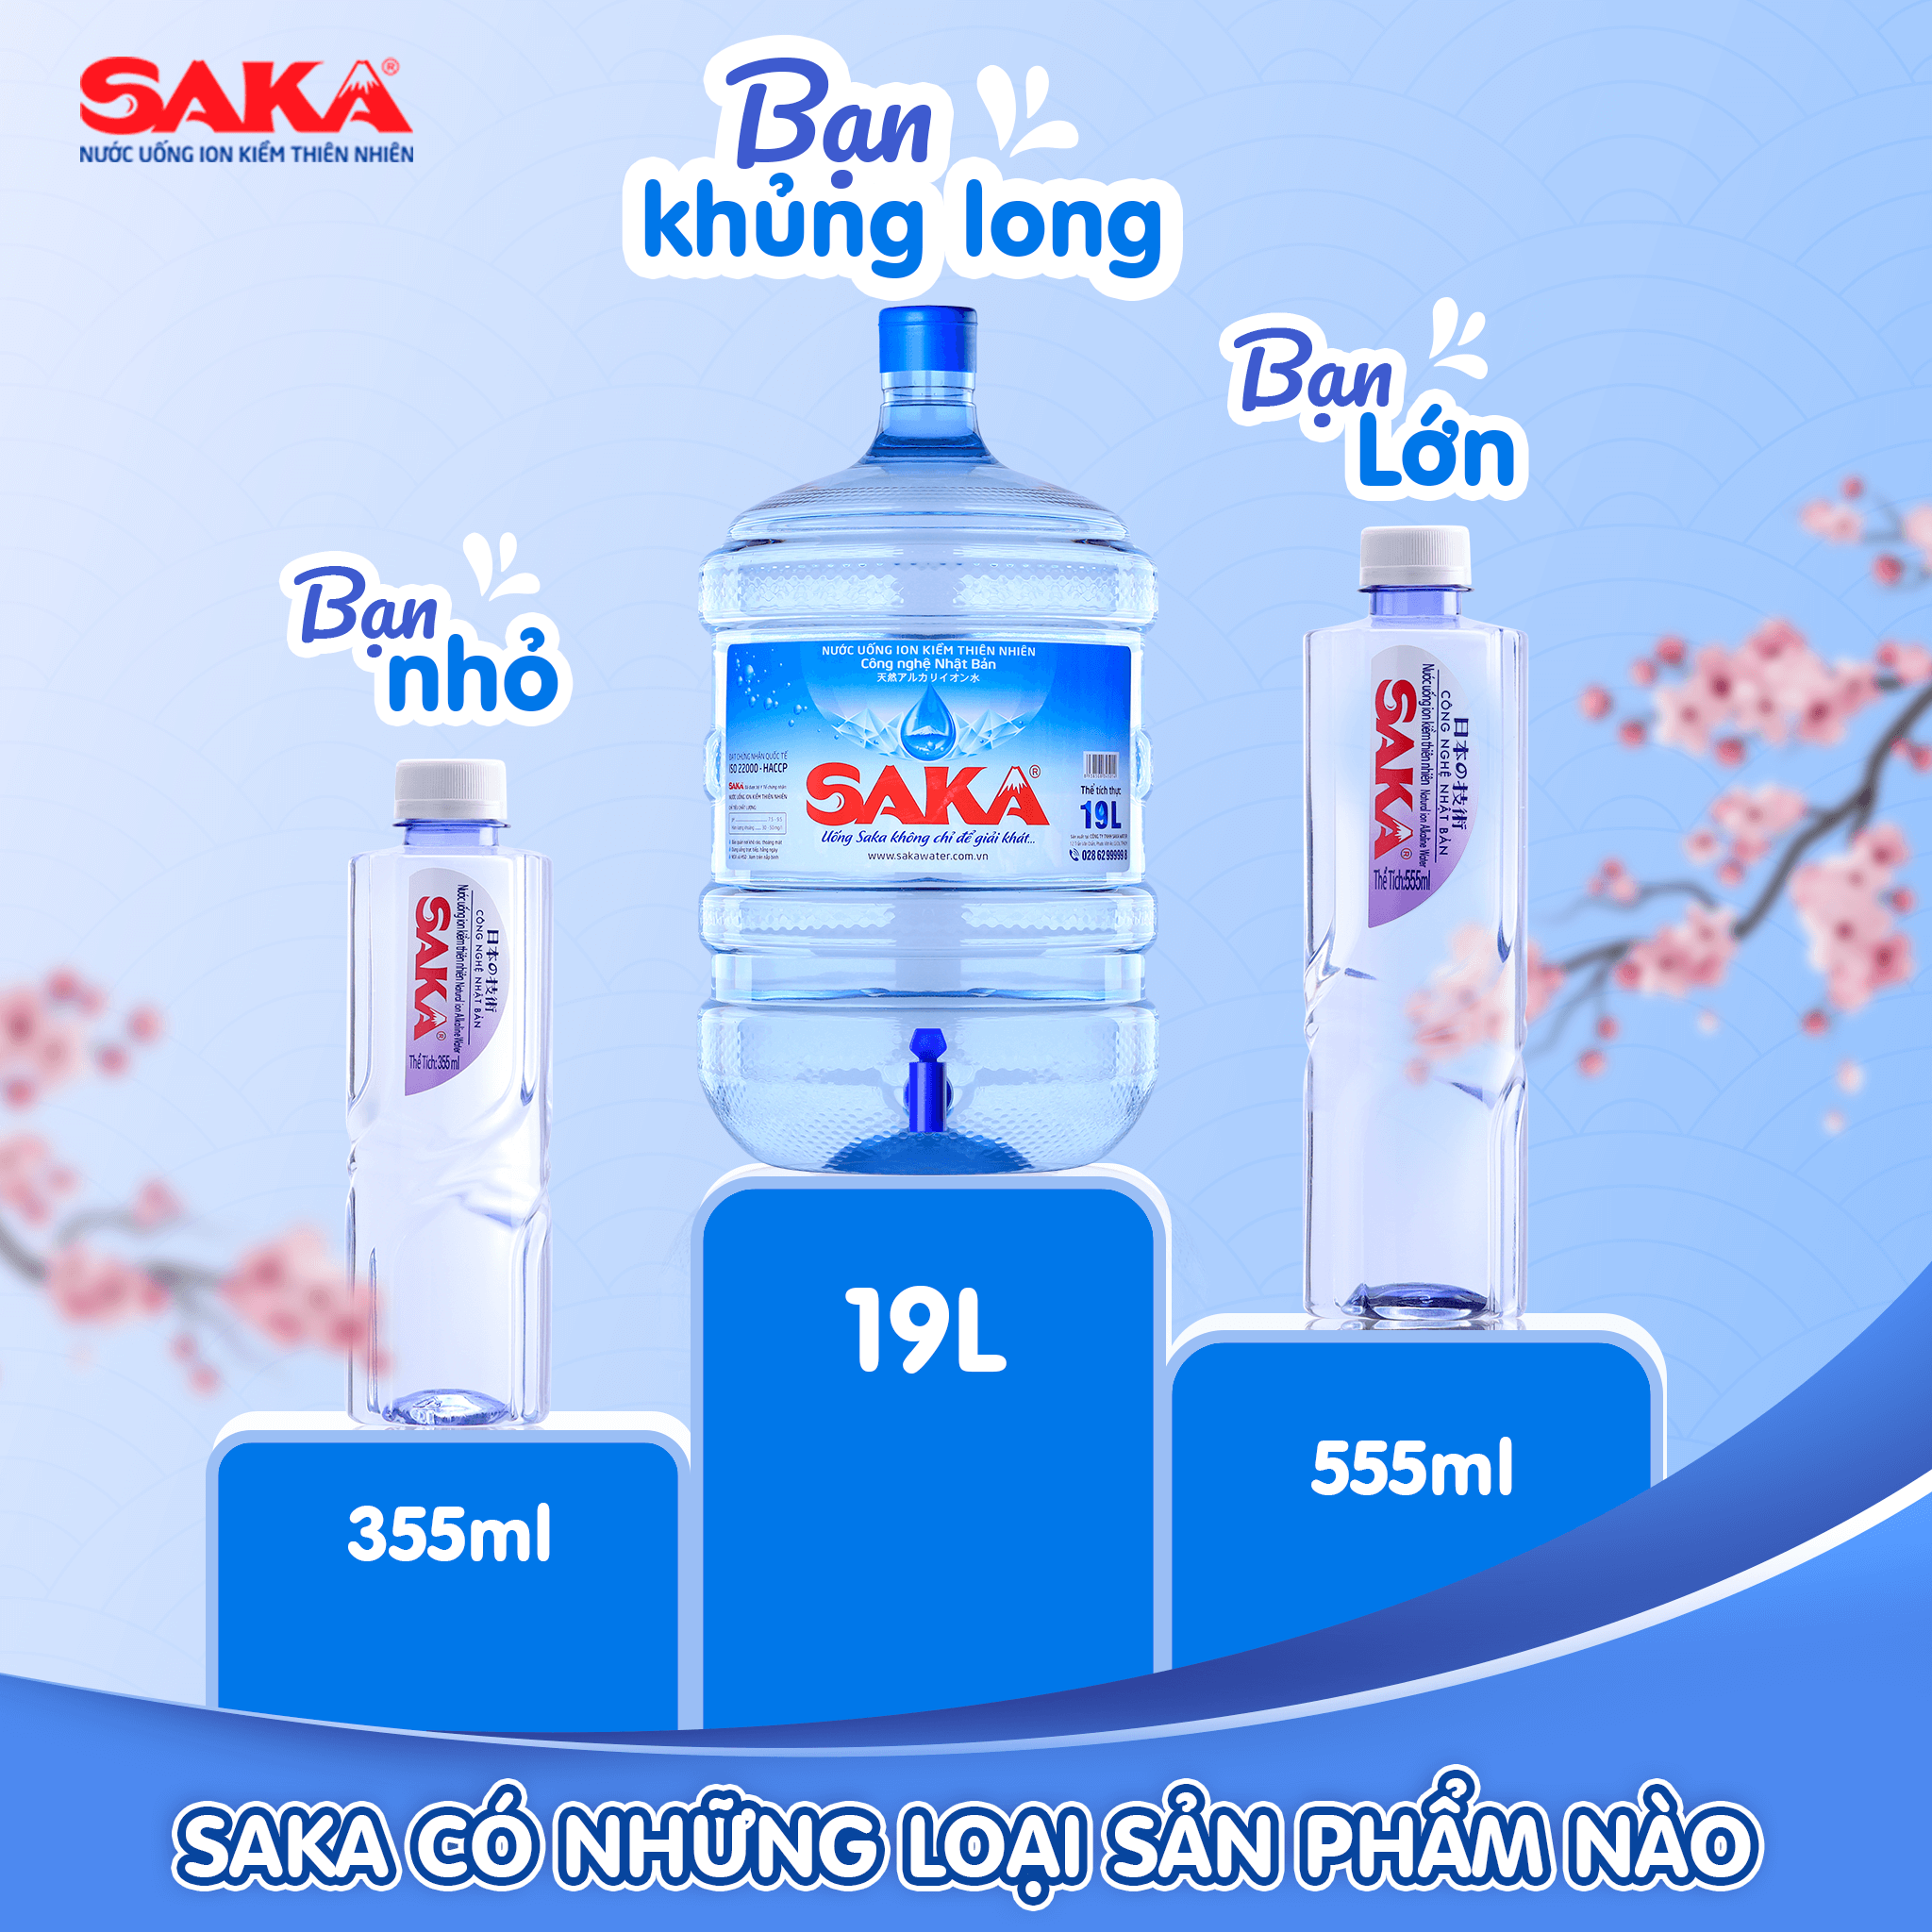 Các sản phẩm nước ion kiềm Saka trên thị trường